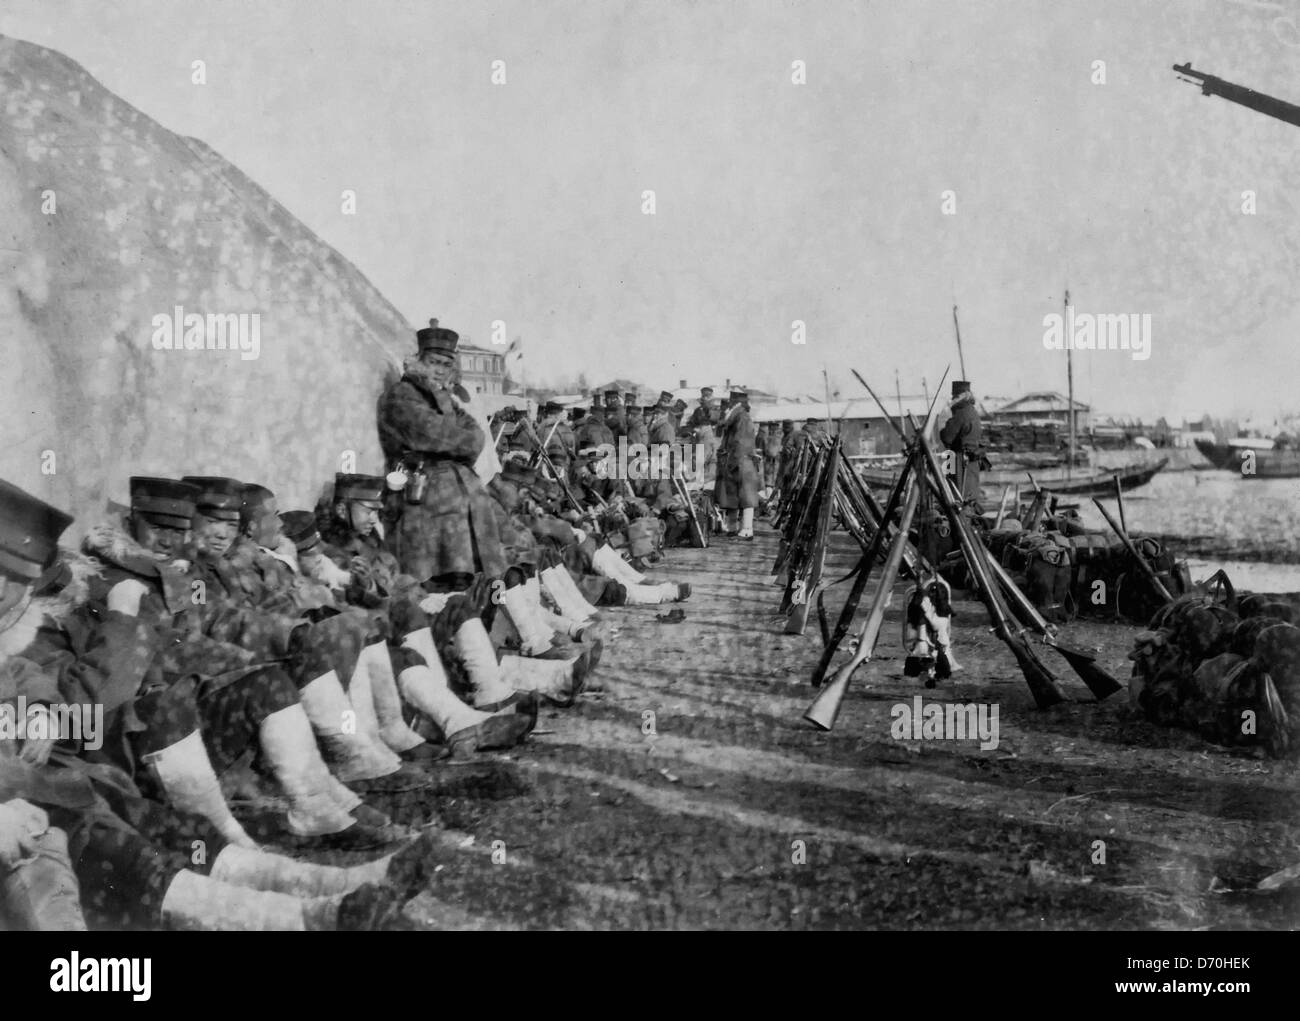 Ankunft von japanischen Soldaten bei Chemulpo, Korea während der Russo-japanischer Krieg, 1904 Stockfoto